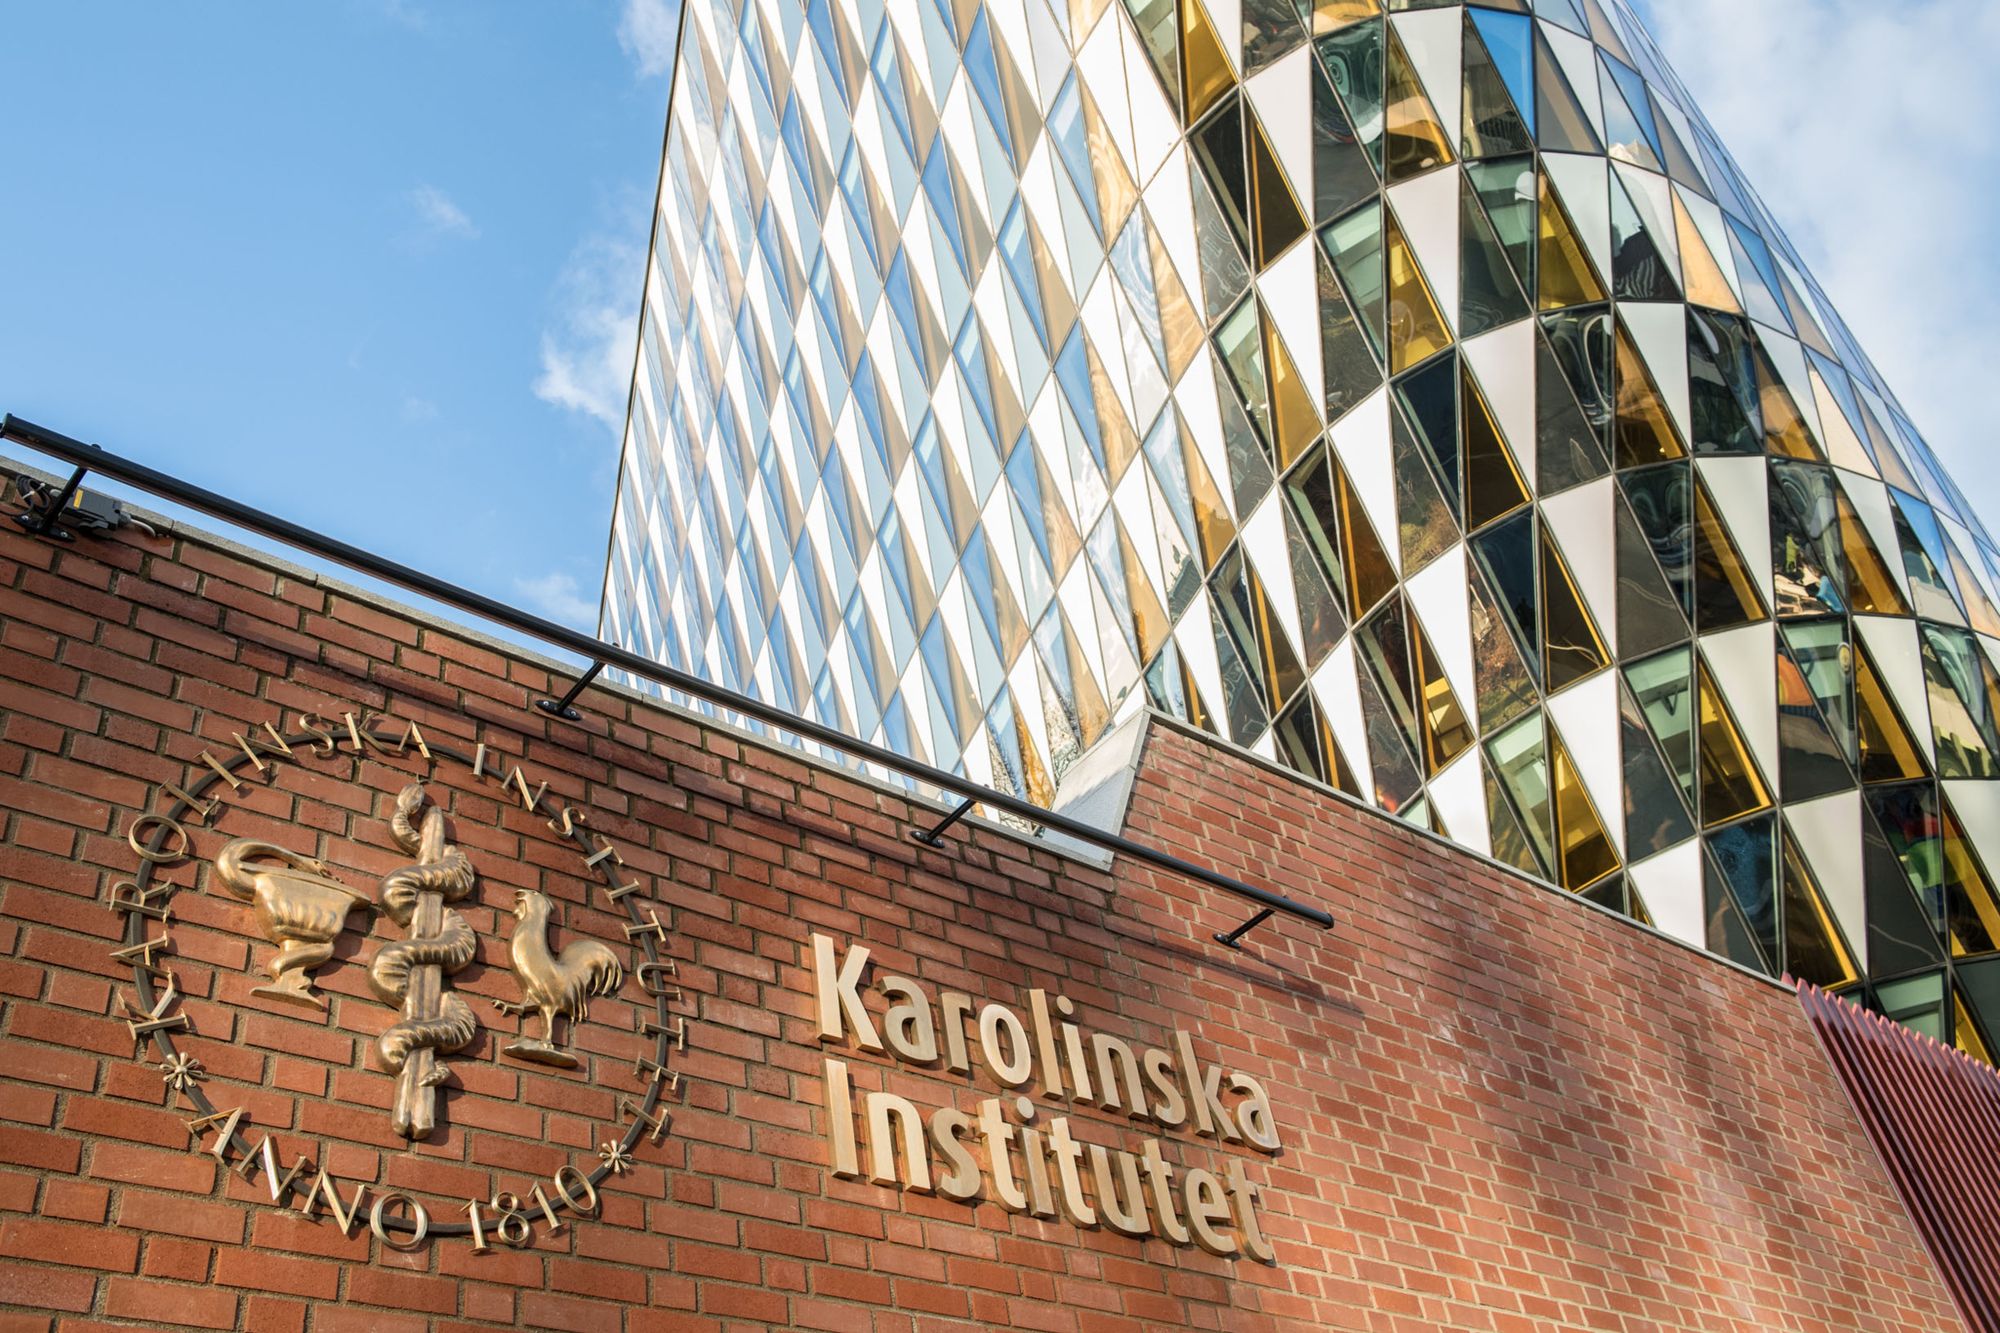 Student Accommodation at Karolinska Institutet: A Guide